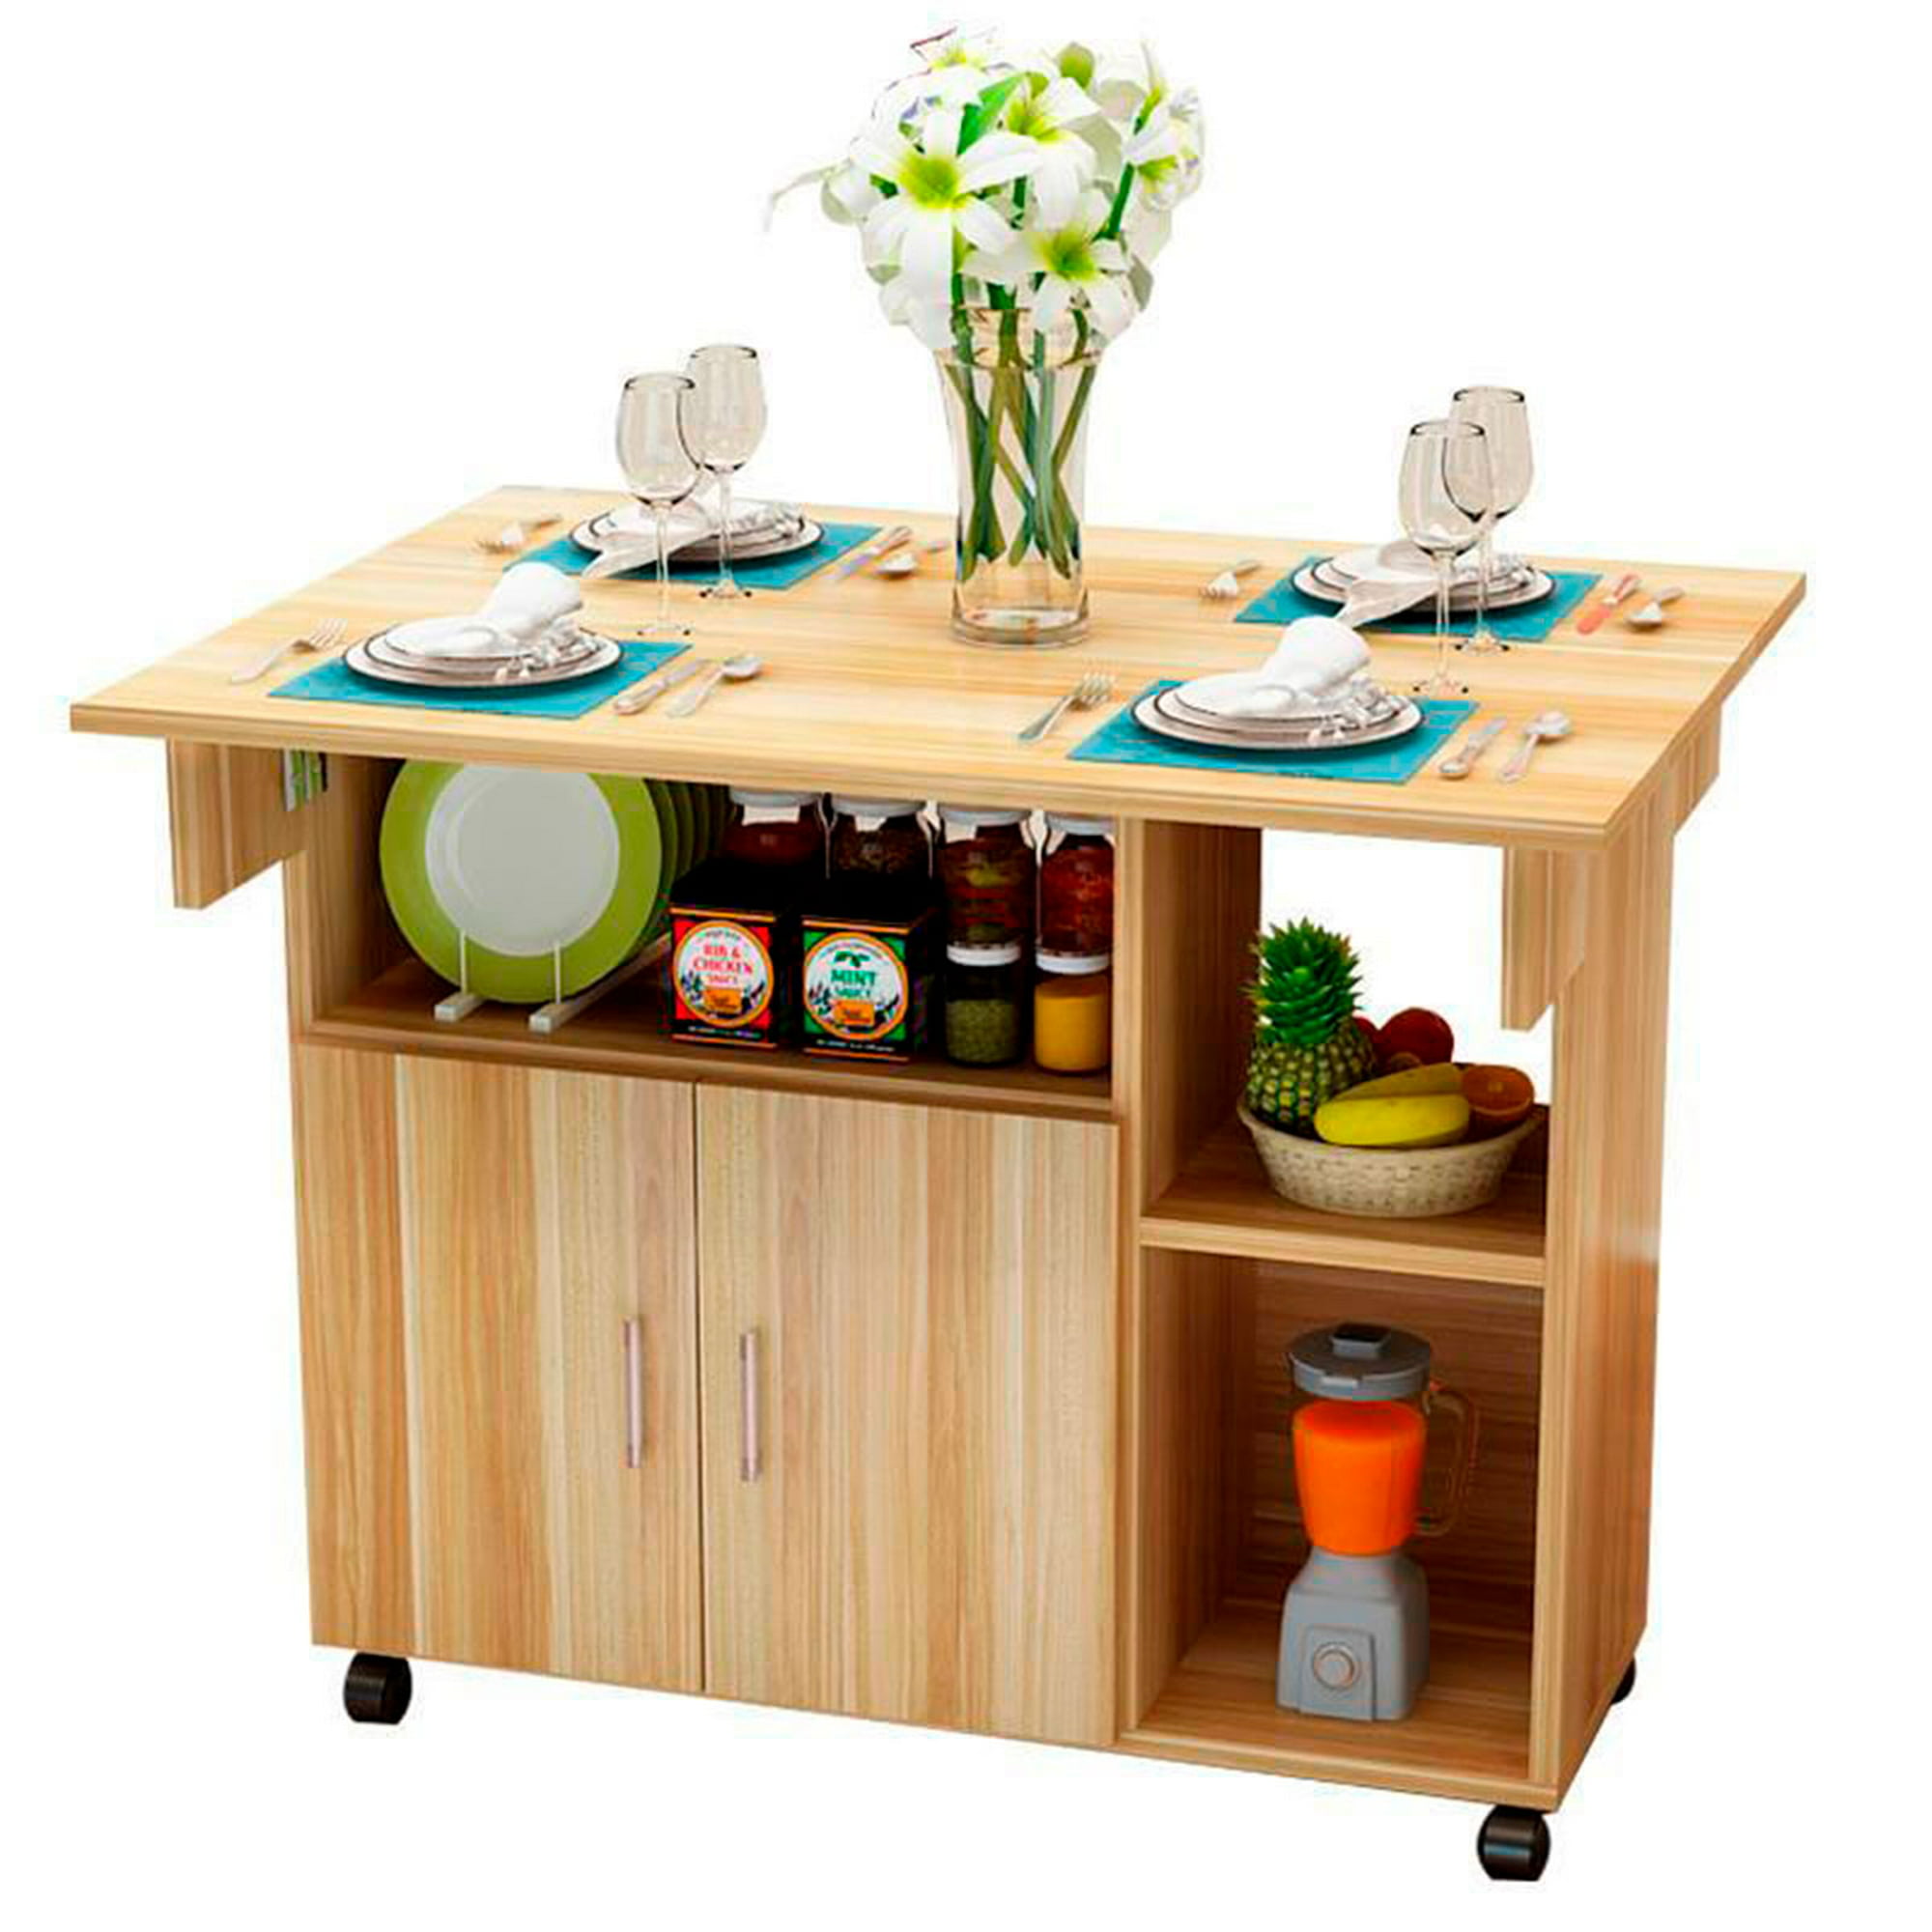  XSDAA Mesa de comedor plegable de doble propósito, mesa de comedor  plegable de madera maciza para balcón, apartamento pequeño, cocina,  estudio, estante, soporte de flores, mesa de bar (color I) 